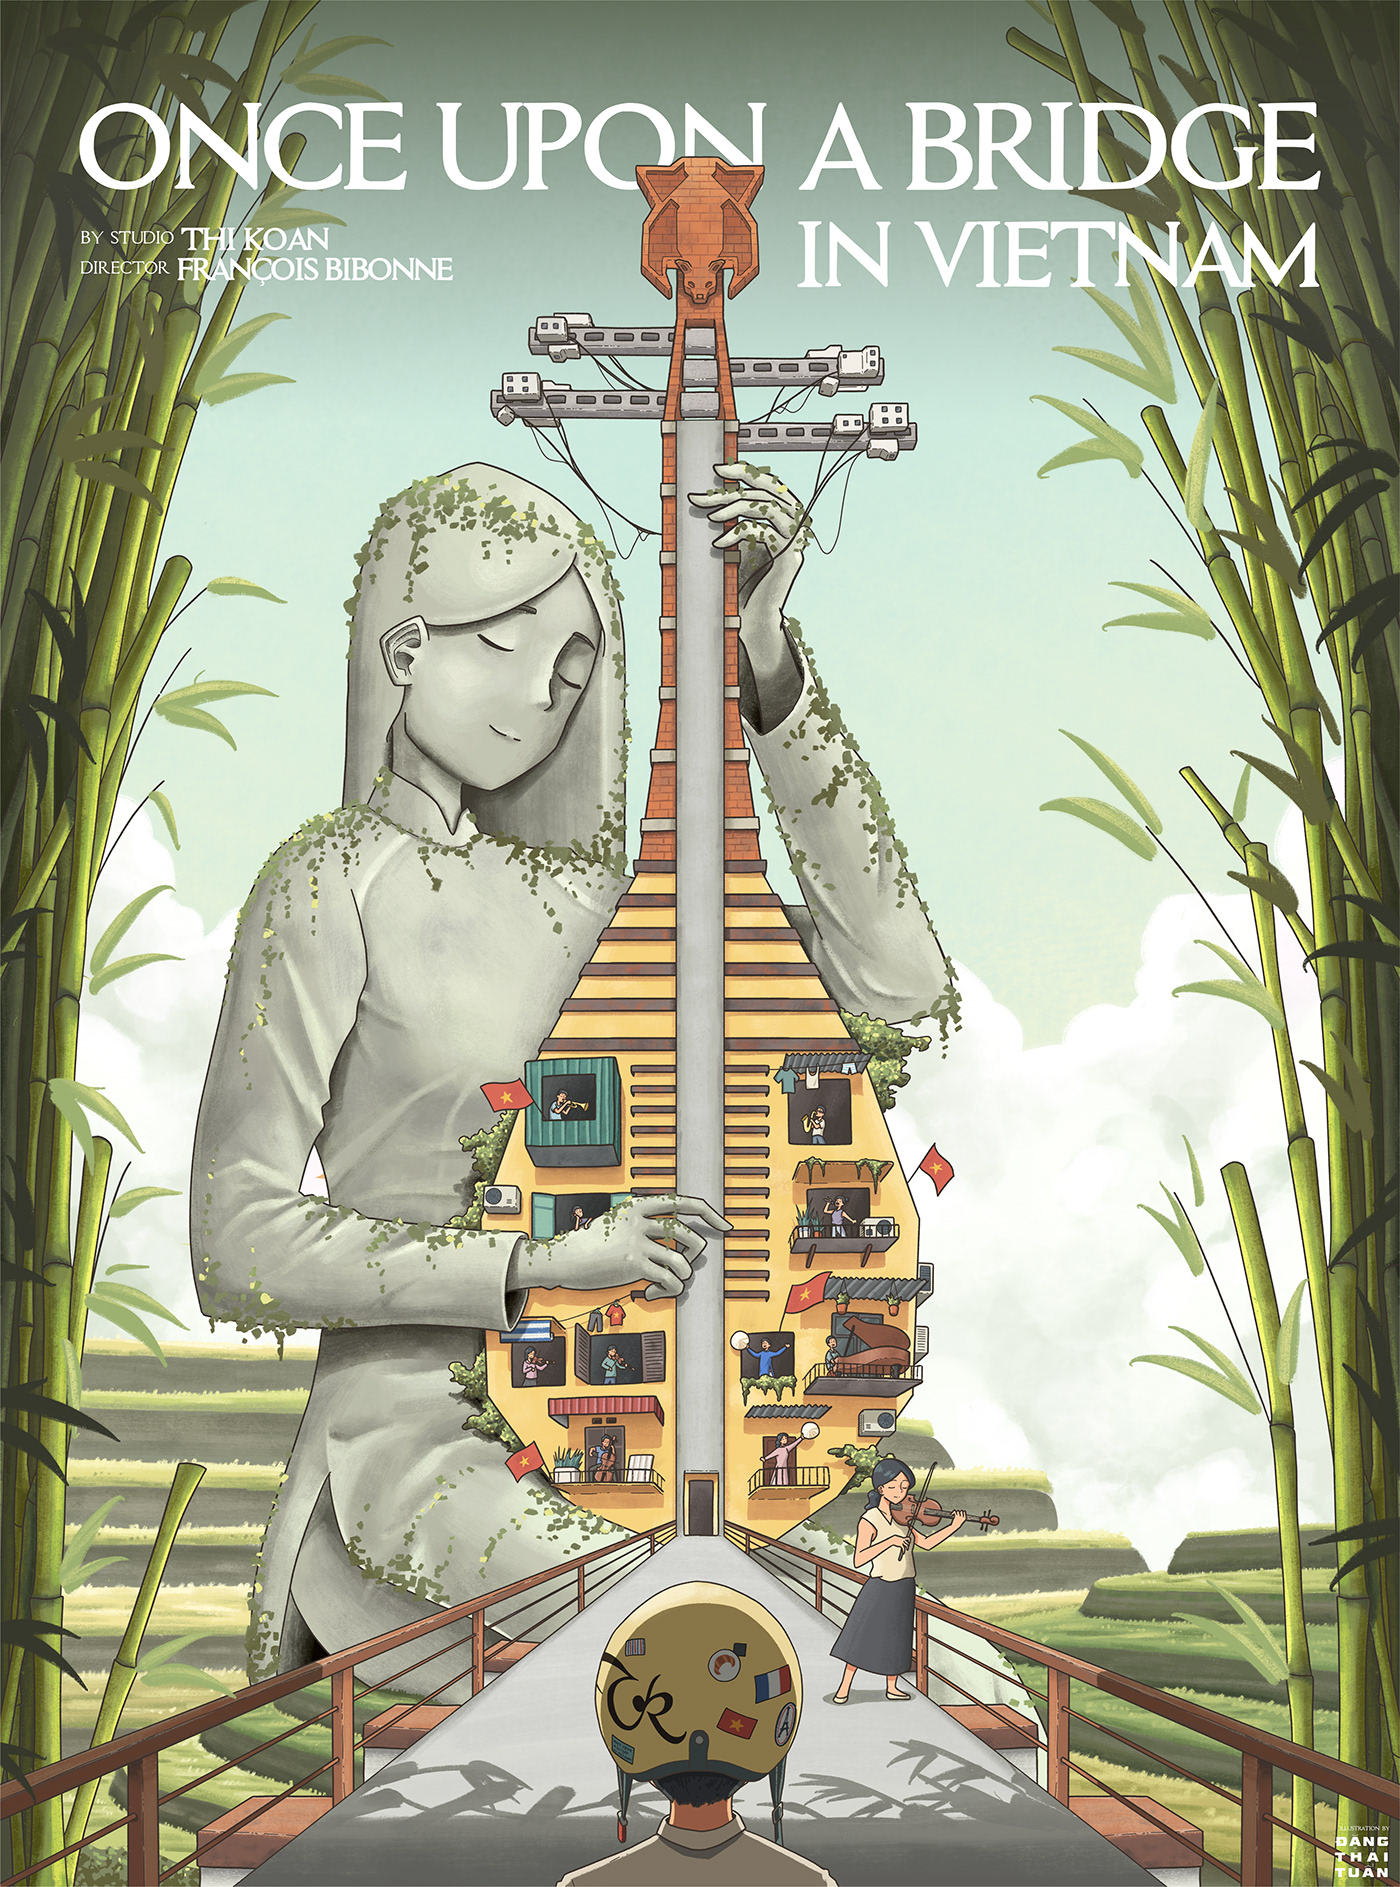 ILLUSTRATION  Digital Art  poster film poster vietnam music artwork digital illustration арт design